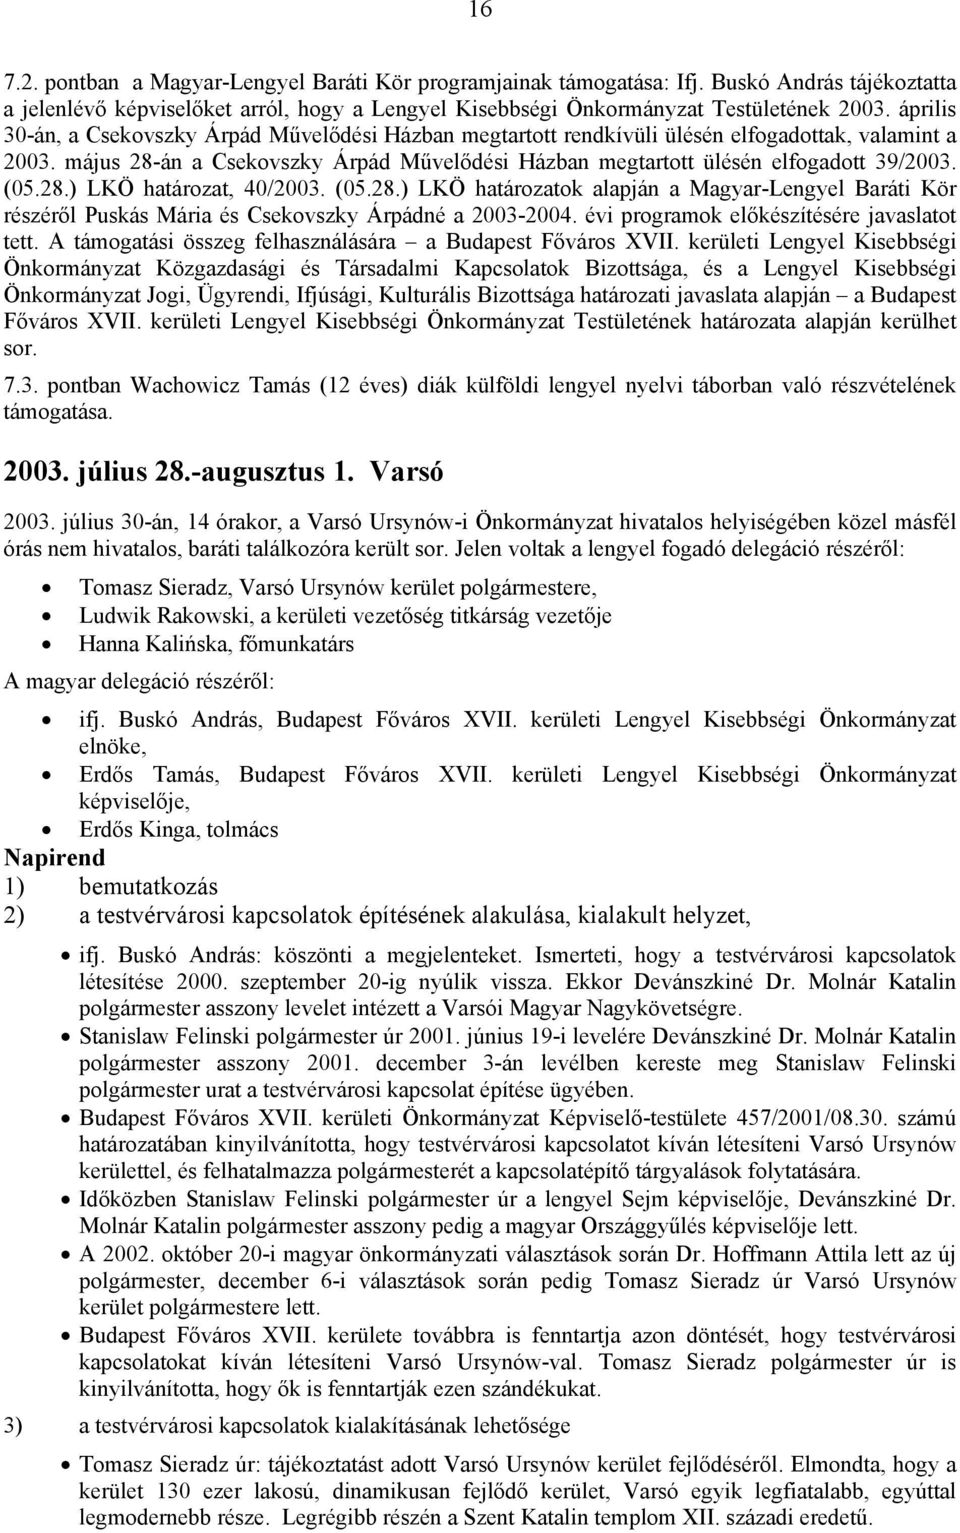 (05.28.) LKÖ határozat, 40/2003. (05.28.) LKÖ határozatok alapján a Magyar-Lengyel Baráti Kör részéről Puskás Mária és Csekovszky Árpádné a 2003-2004. évi programok előkészítésére javaslatot tett.